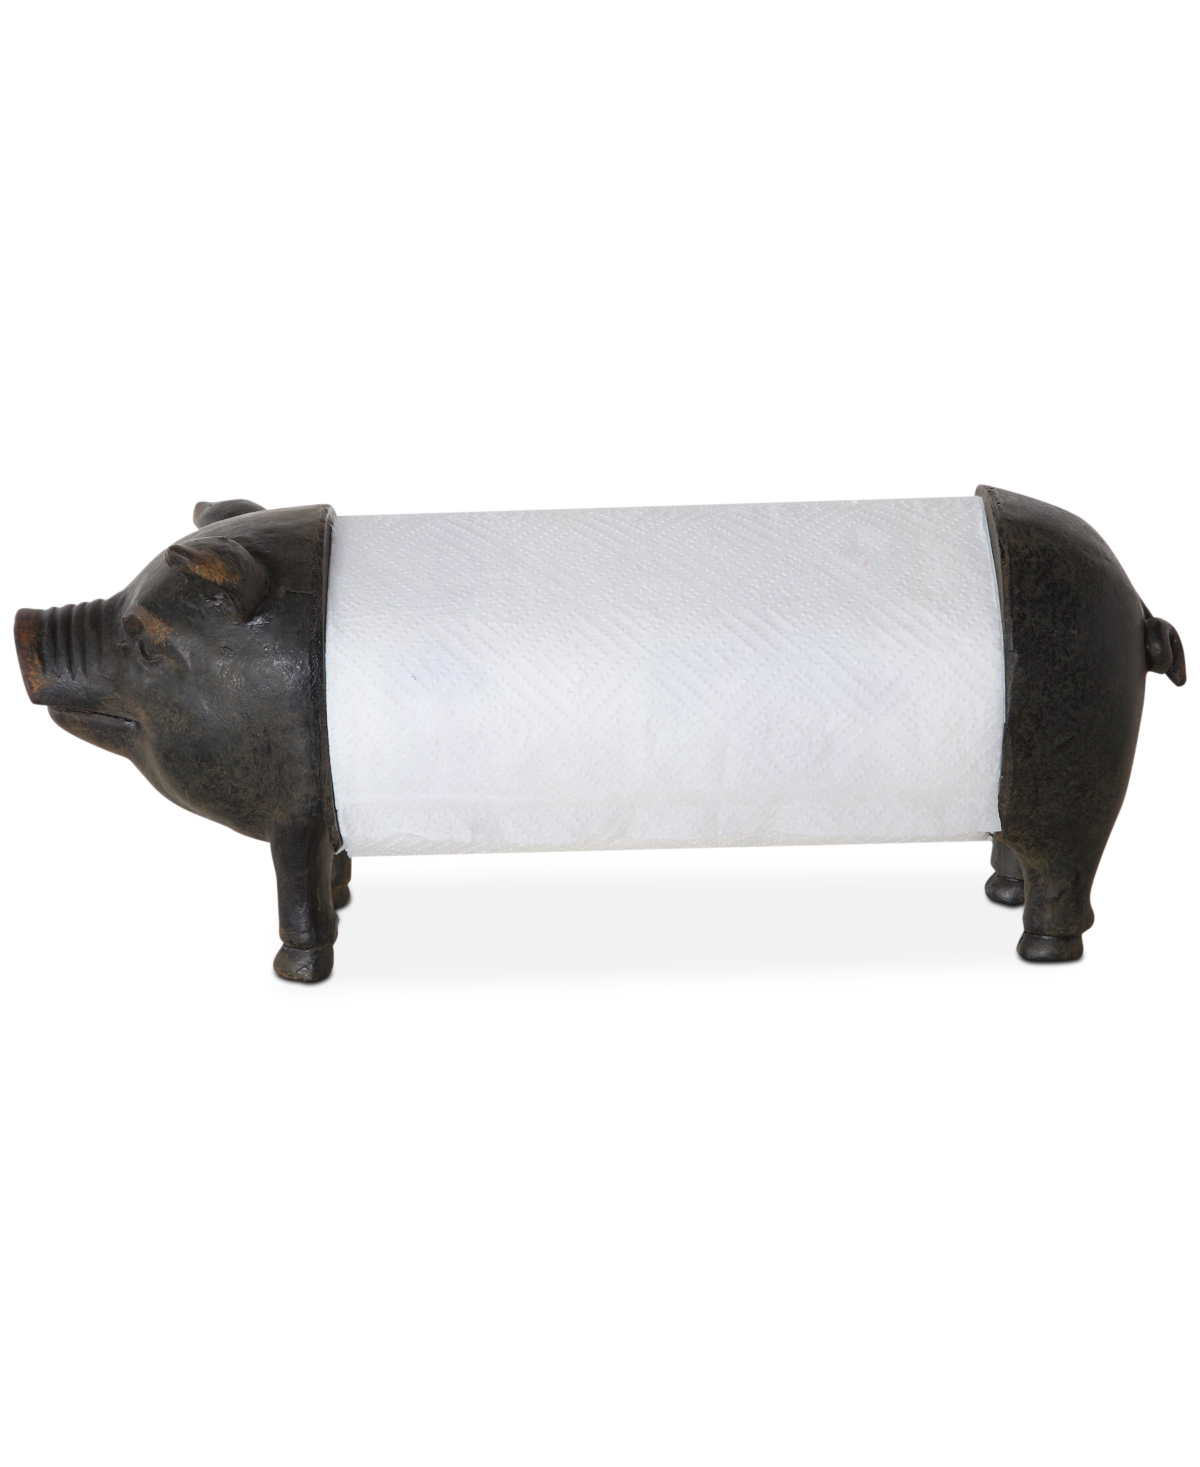 Pig Shaped Paper Towel Holder - Black